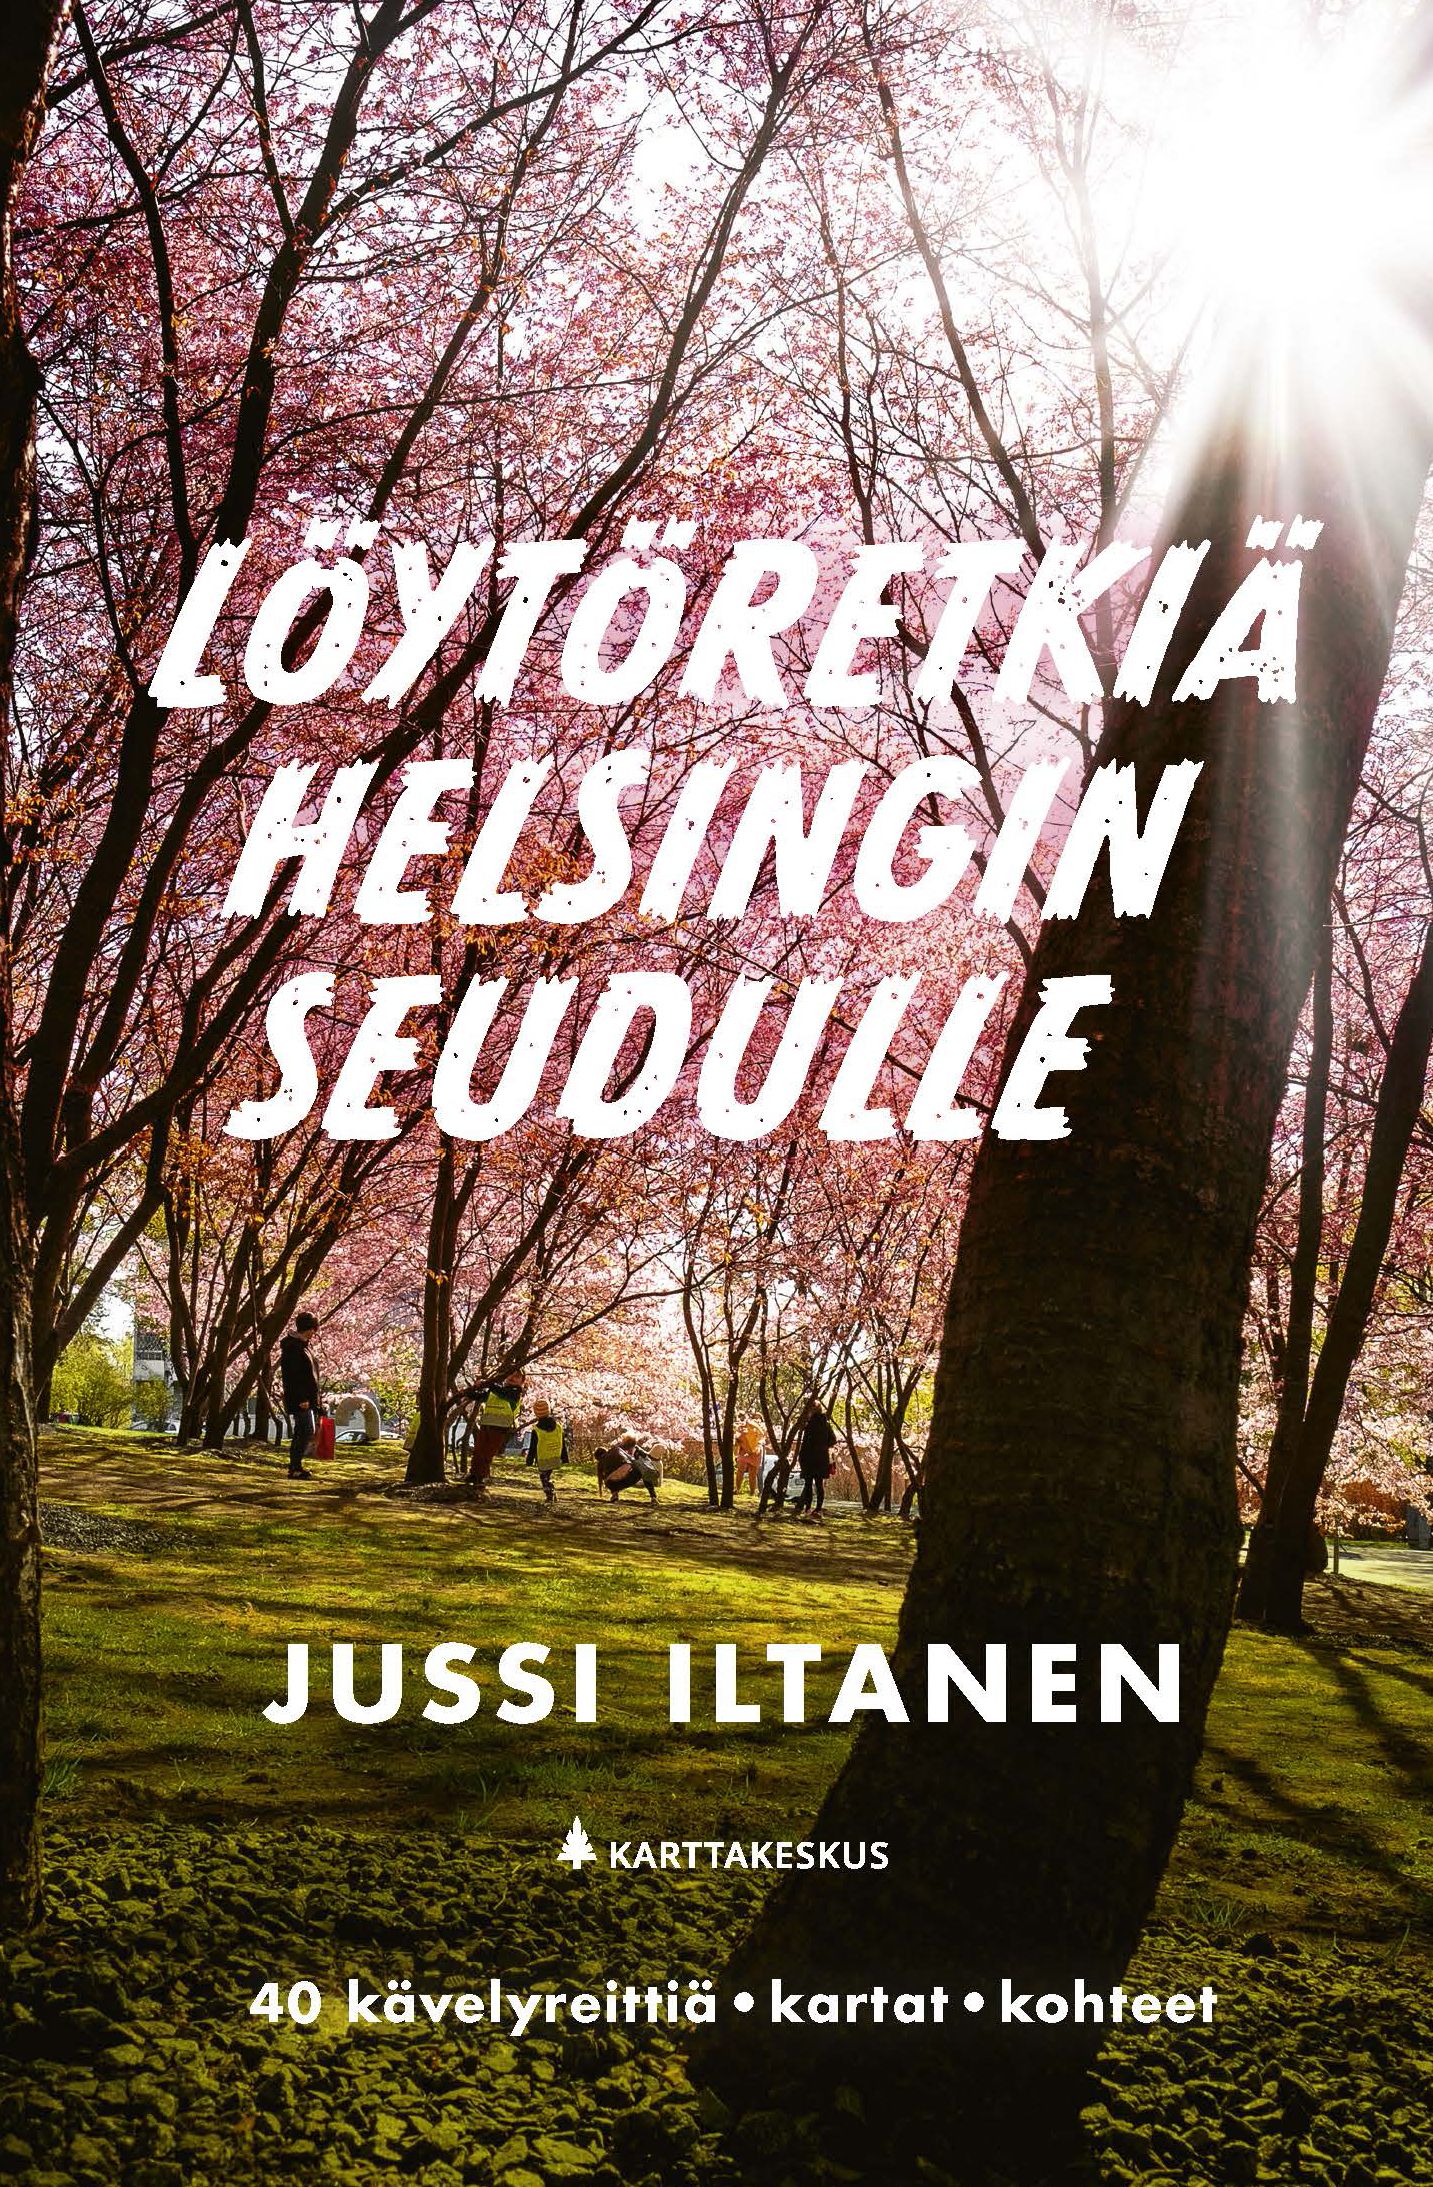 Jussi Iltanen : Löytöretkiä Helsingin seudulle